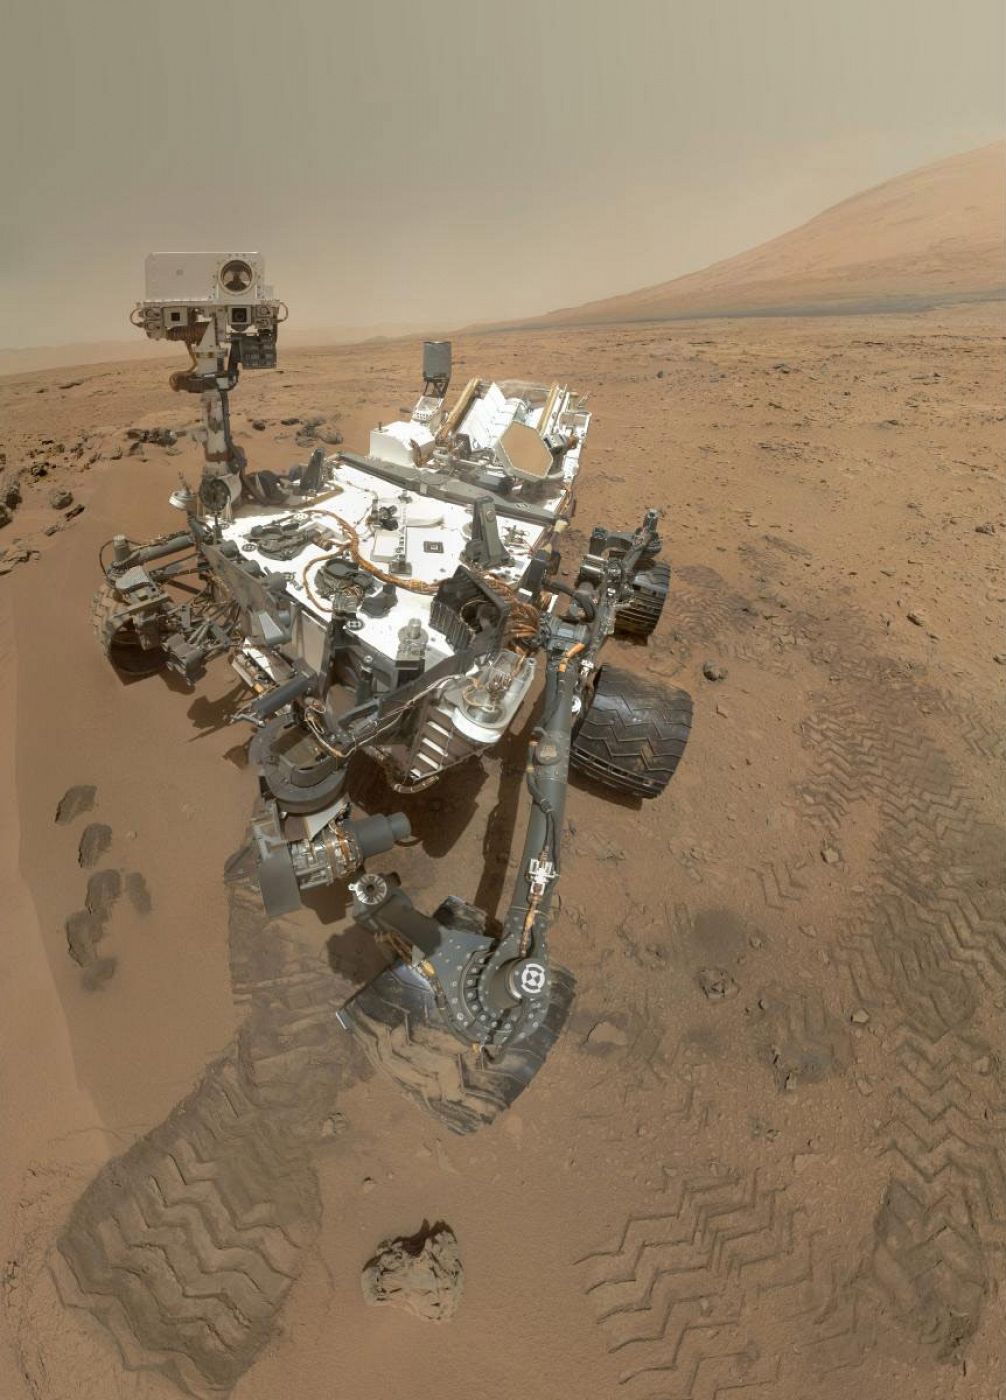 "Autorretrato" de Curiosity sobre la superficie de Marte.